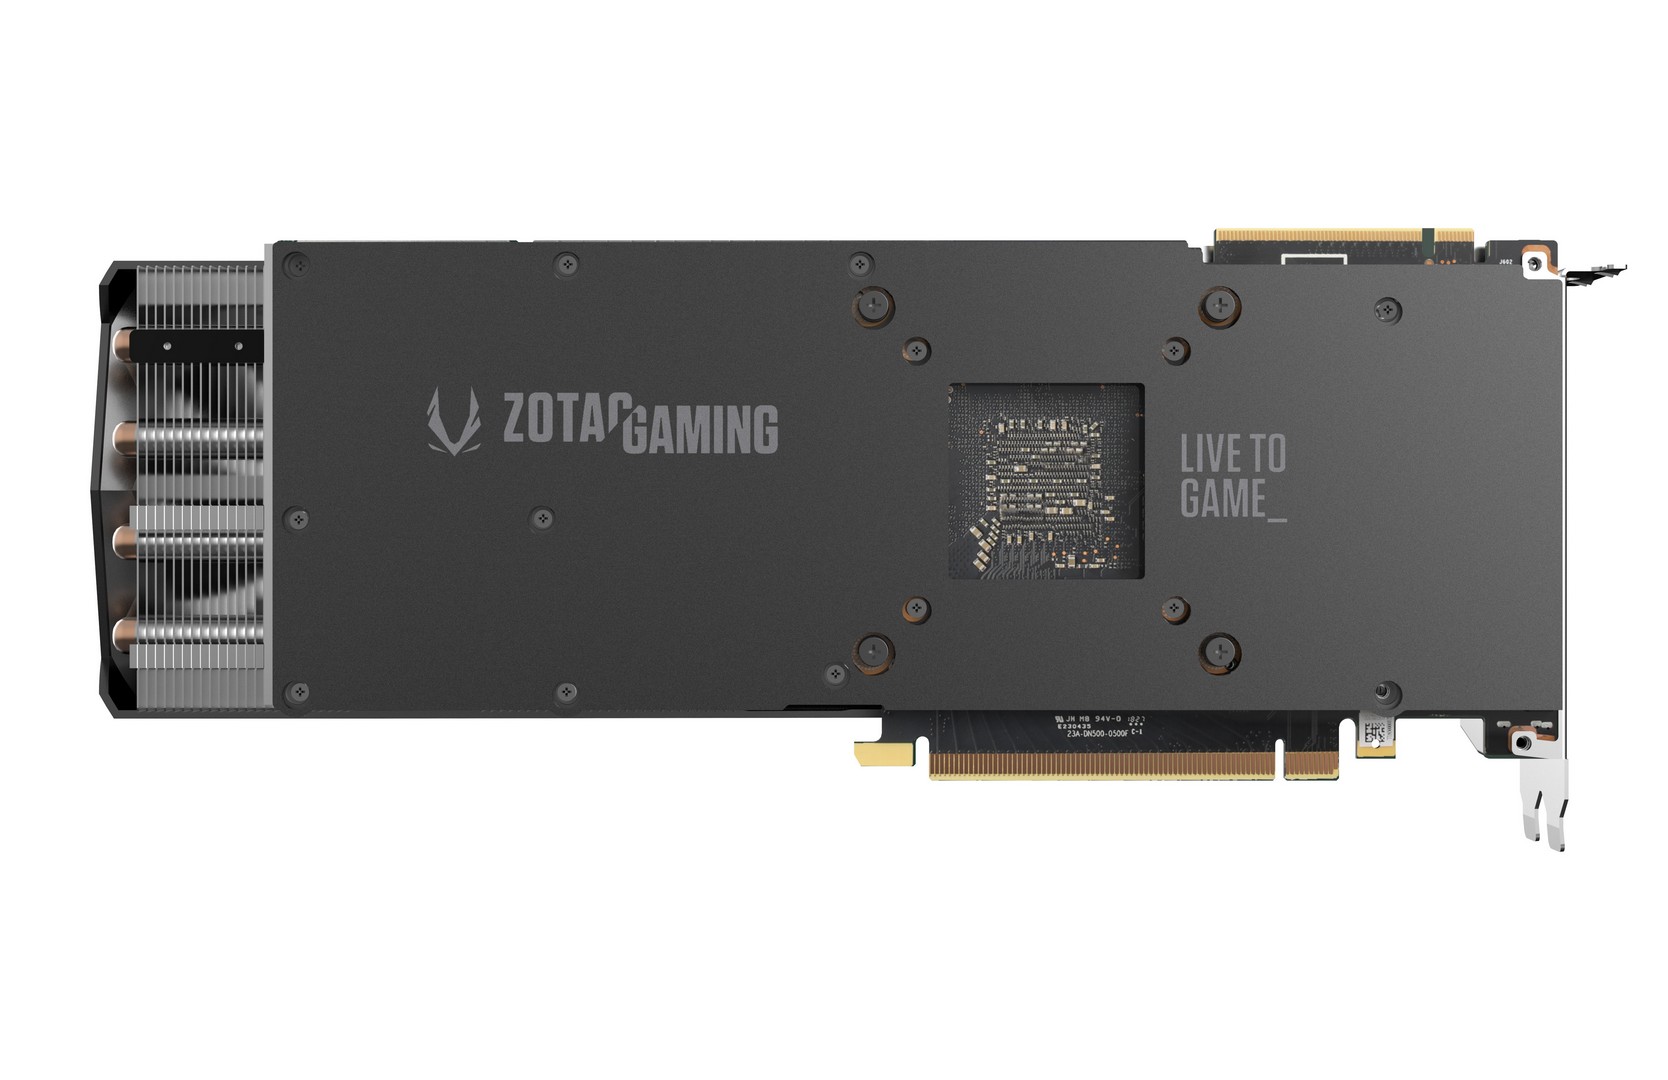 ZOTAC Gaming GeForce RTX 2000 Series - TecnoGaming